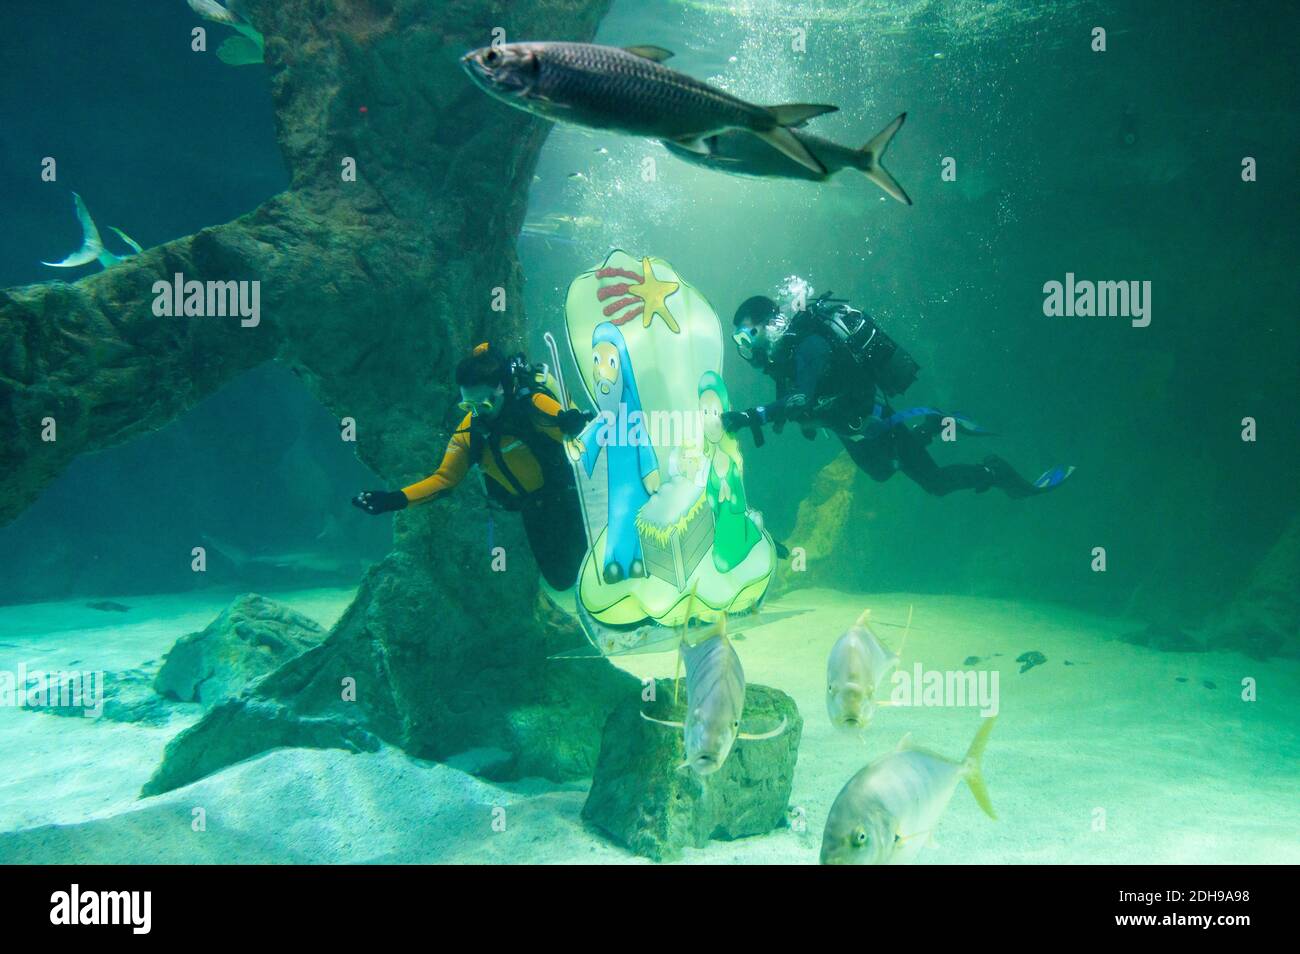 Madrid, Spagna. 10 dicembre 2020. Due subacquei collocano parte della tradizionale Presepe di Natale sott'acqua all'interno dell'acquario dello Zoo di Madrid. Credit: Marcos del Mazo/Alamy Live News Foto Stock